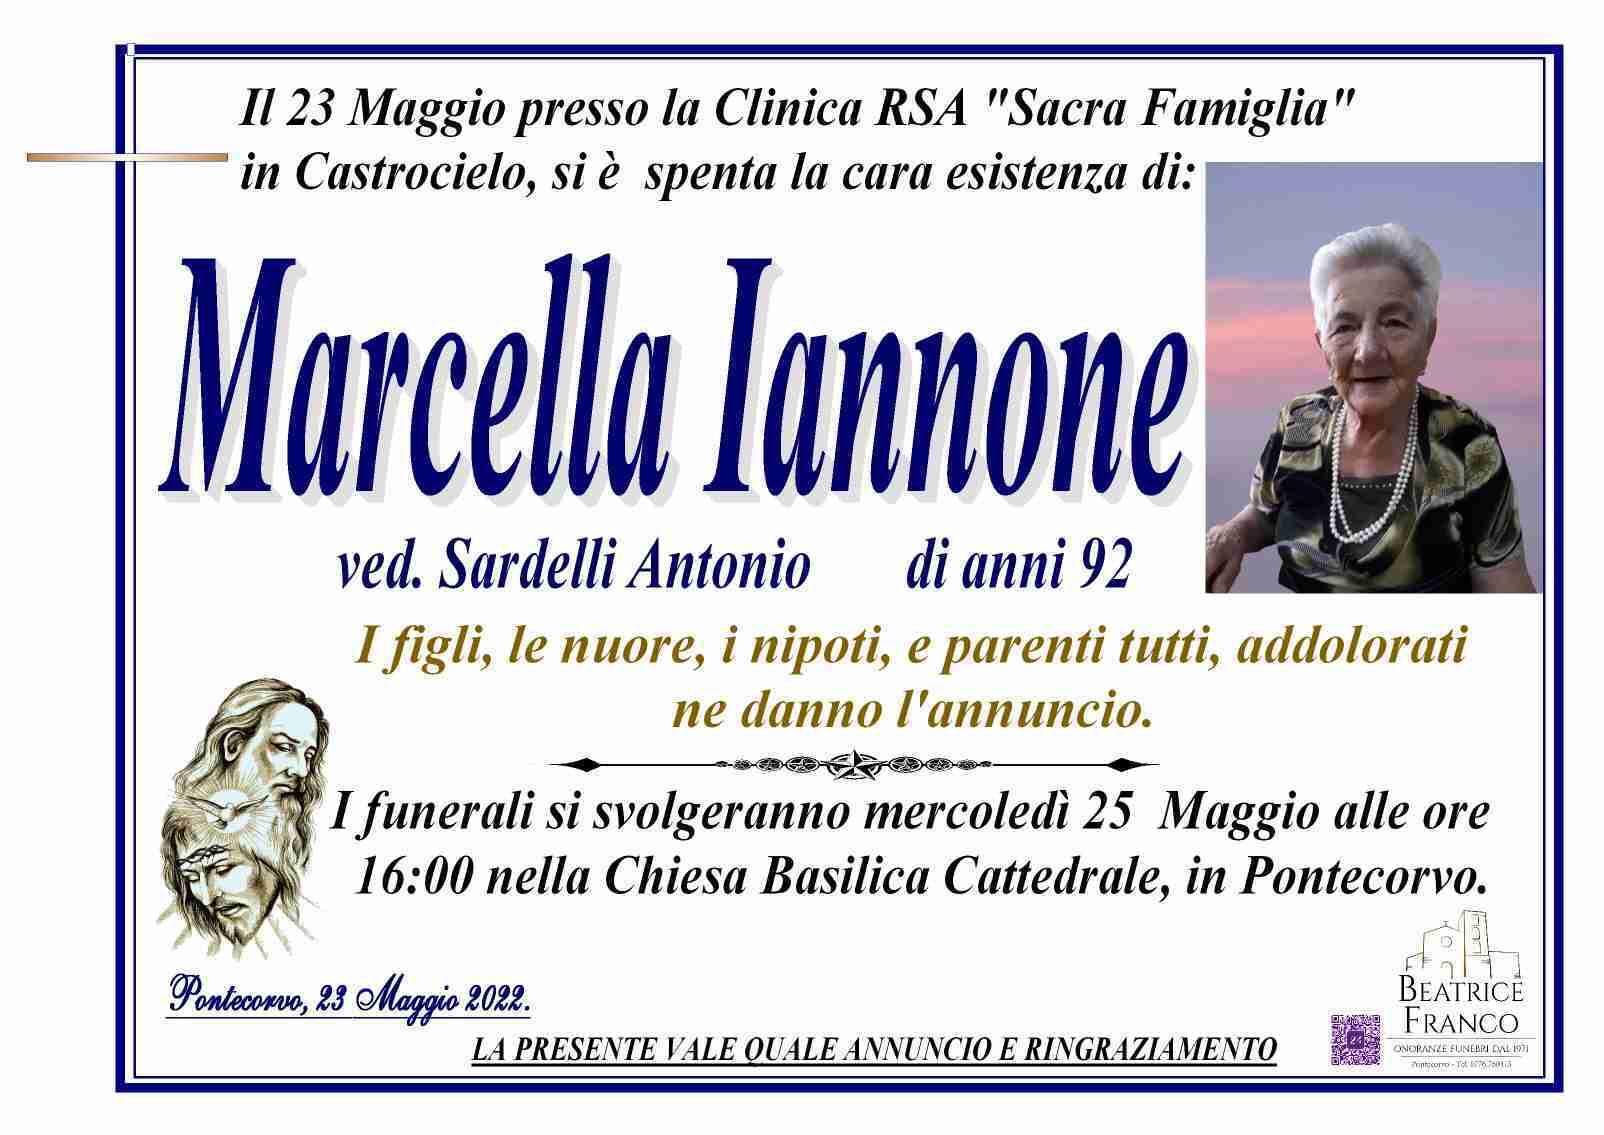 Marcella Iannone